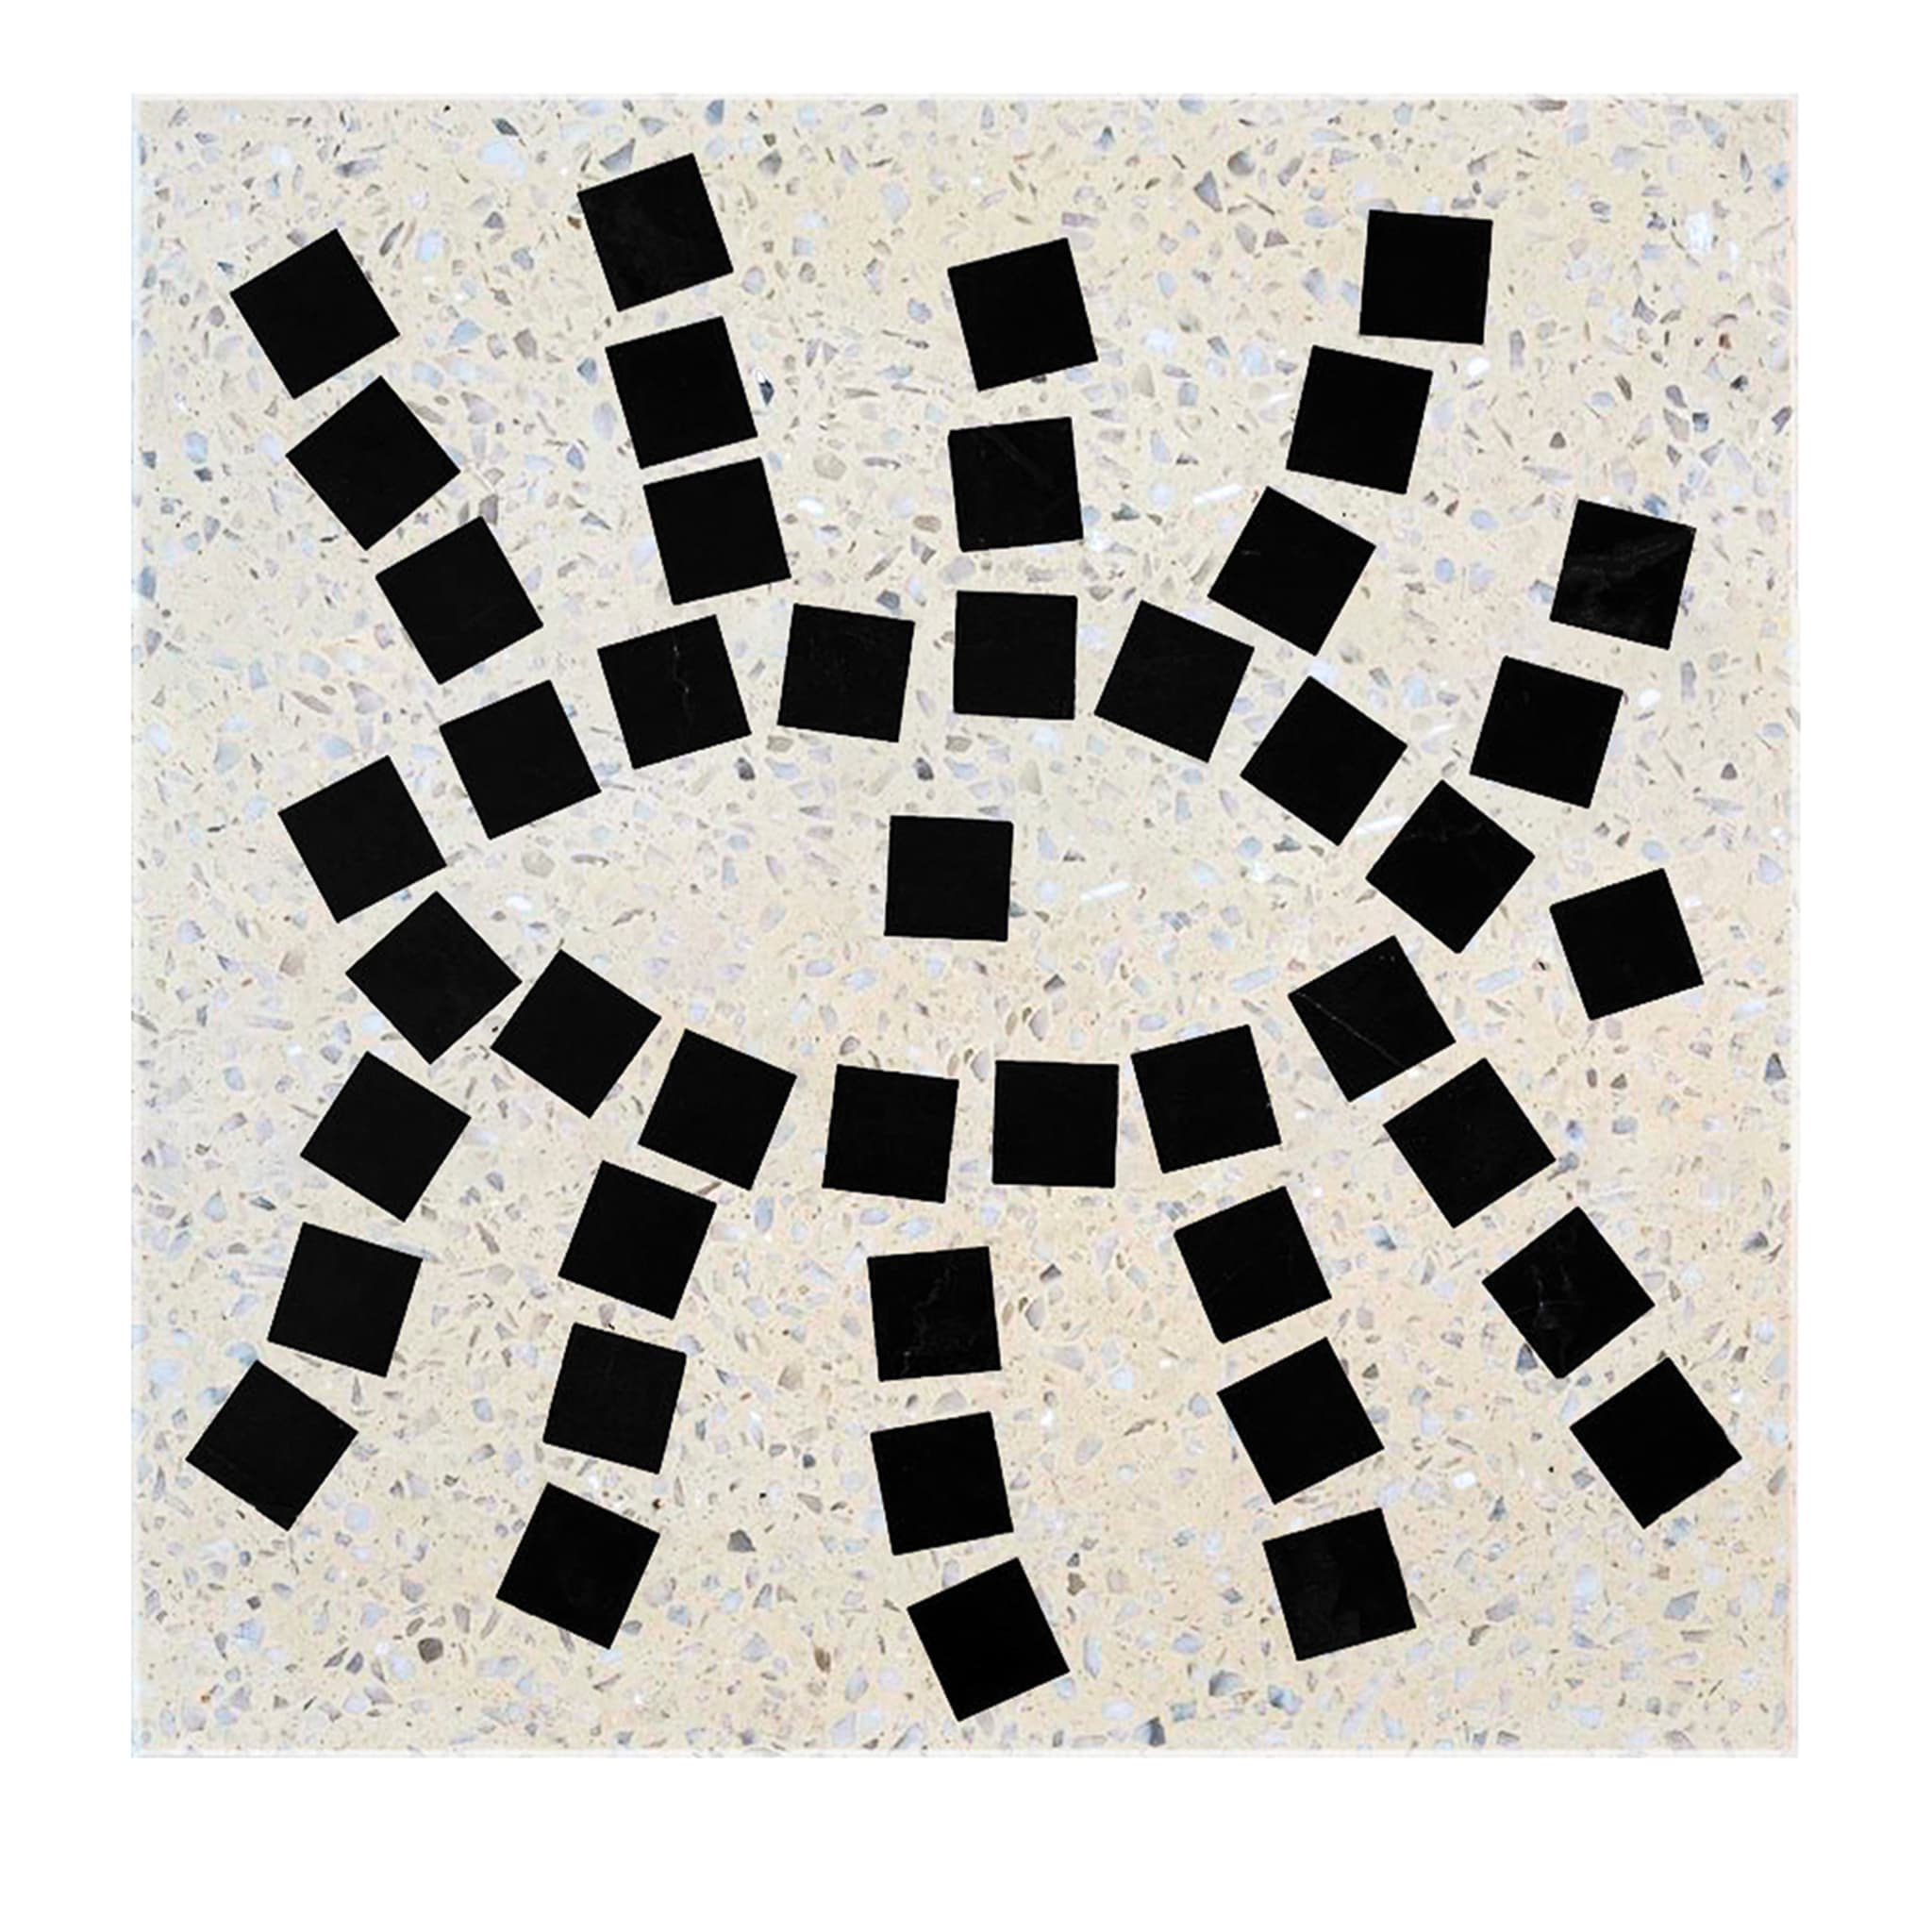 Set of 4 Graniglie - Tiles - Glance V - Main view